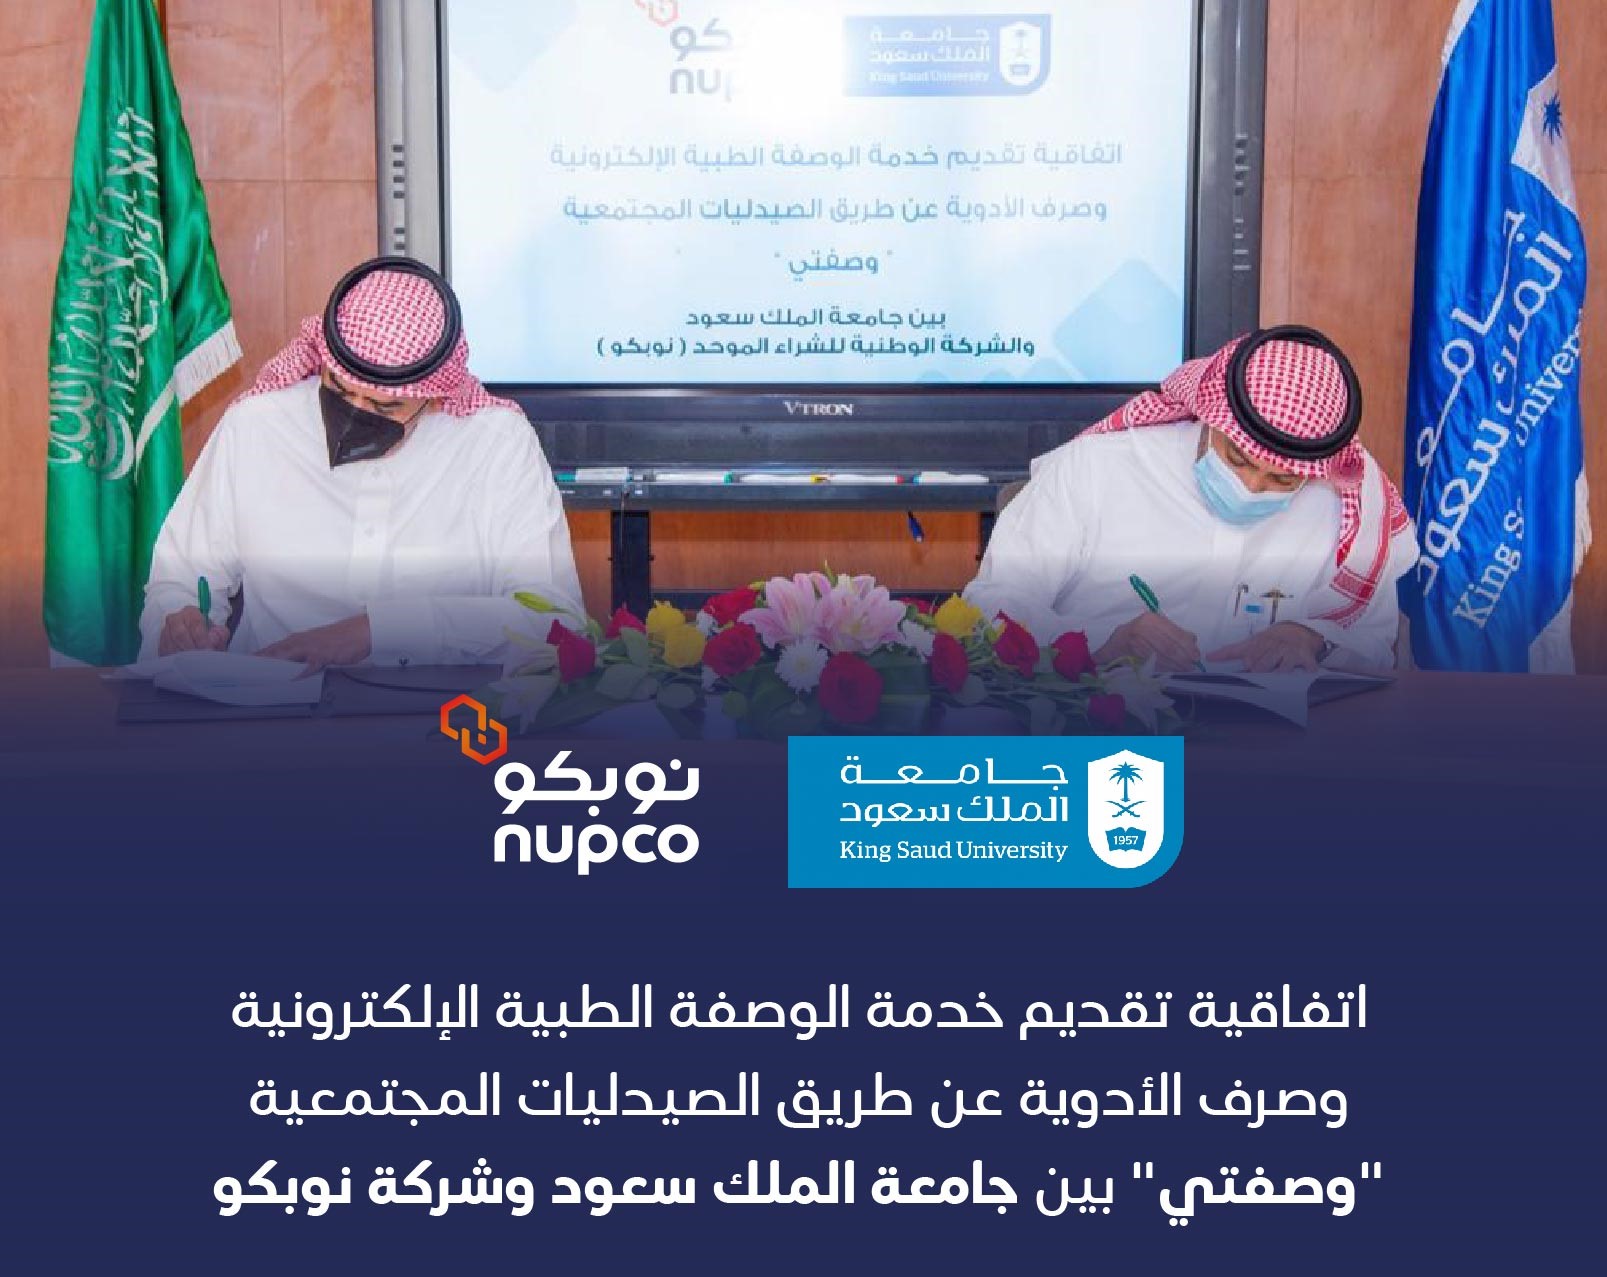 أبرمت نوبكو اتفاقية تعاون مع جامعة الملك سعود لتقديم خدمات وصفتي